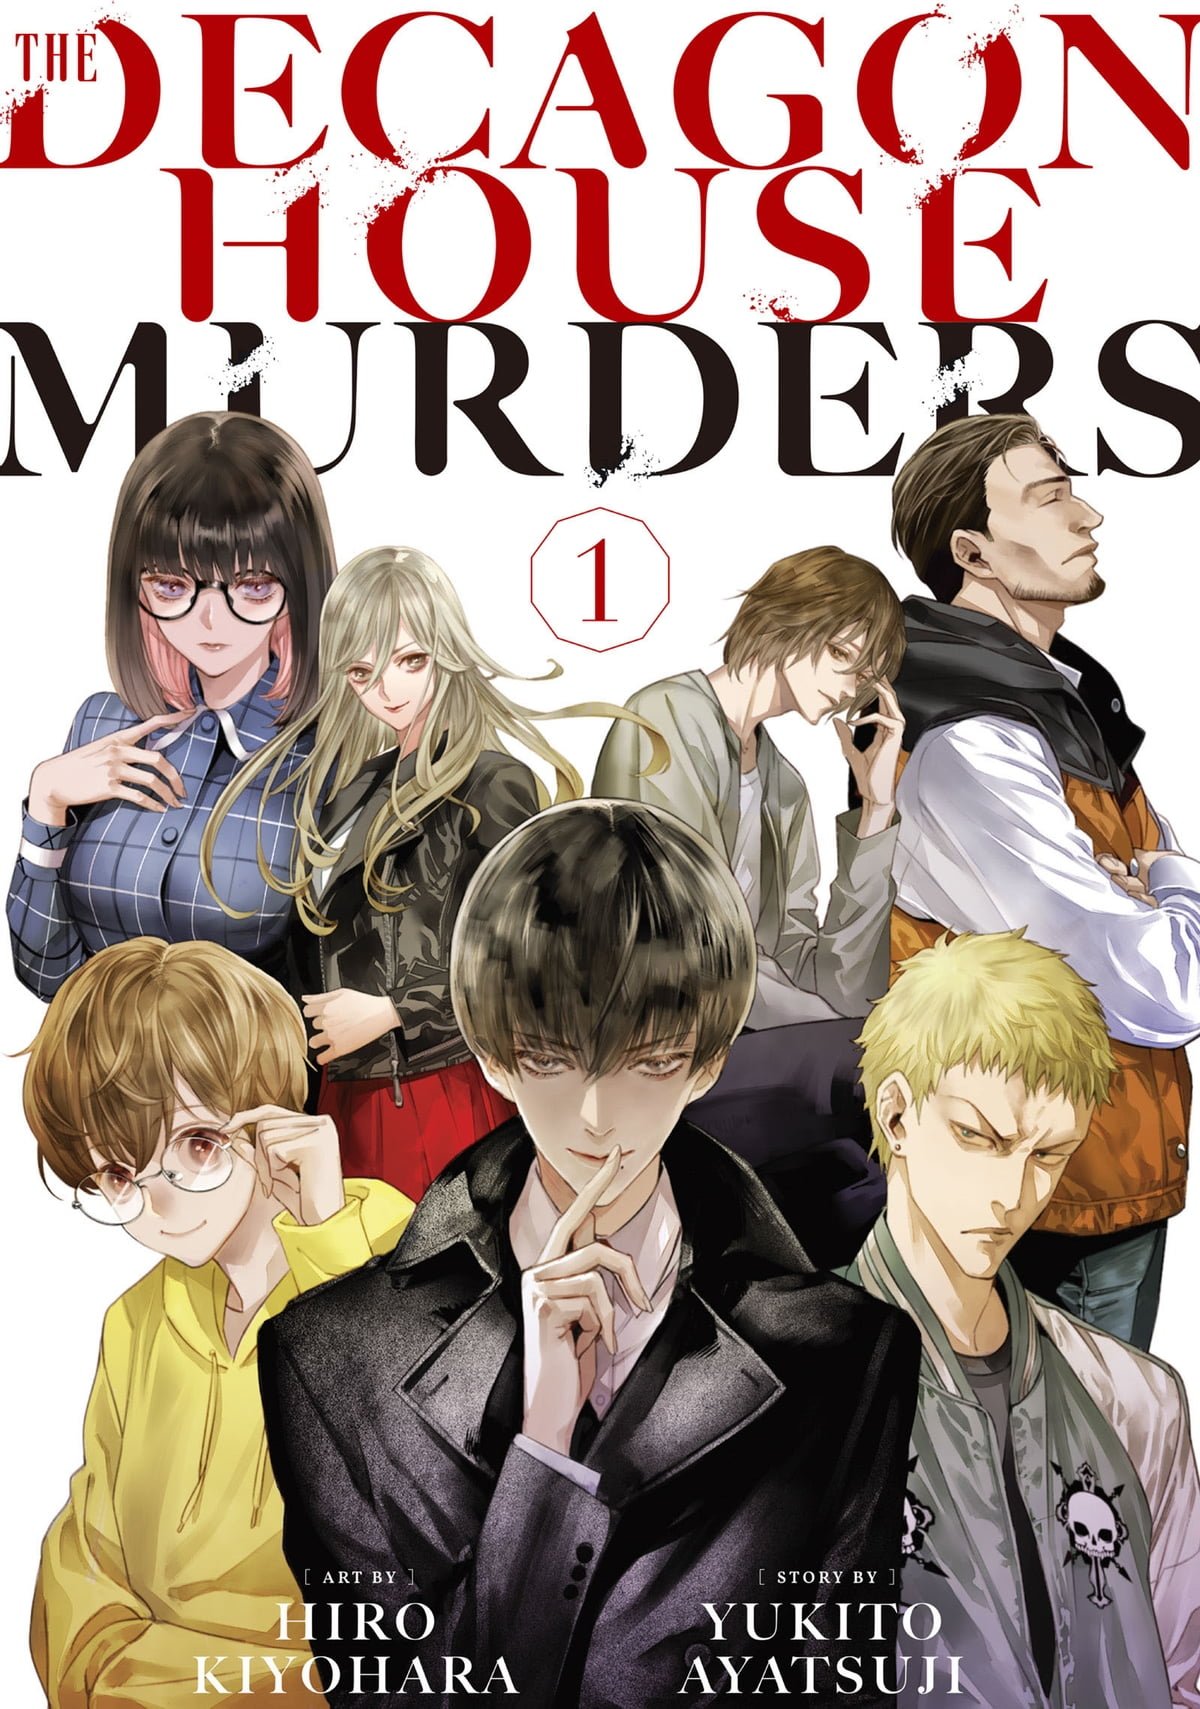 THE DECAGON HOUSE MURDERS, tra le novità manga Star Comics di Giugno 2022